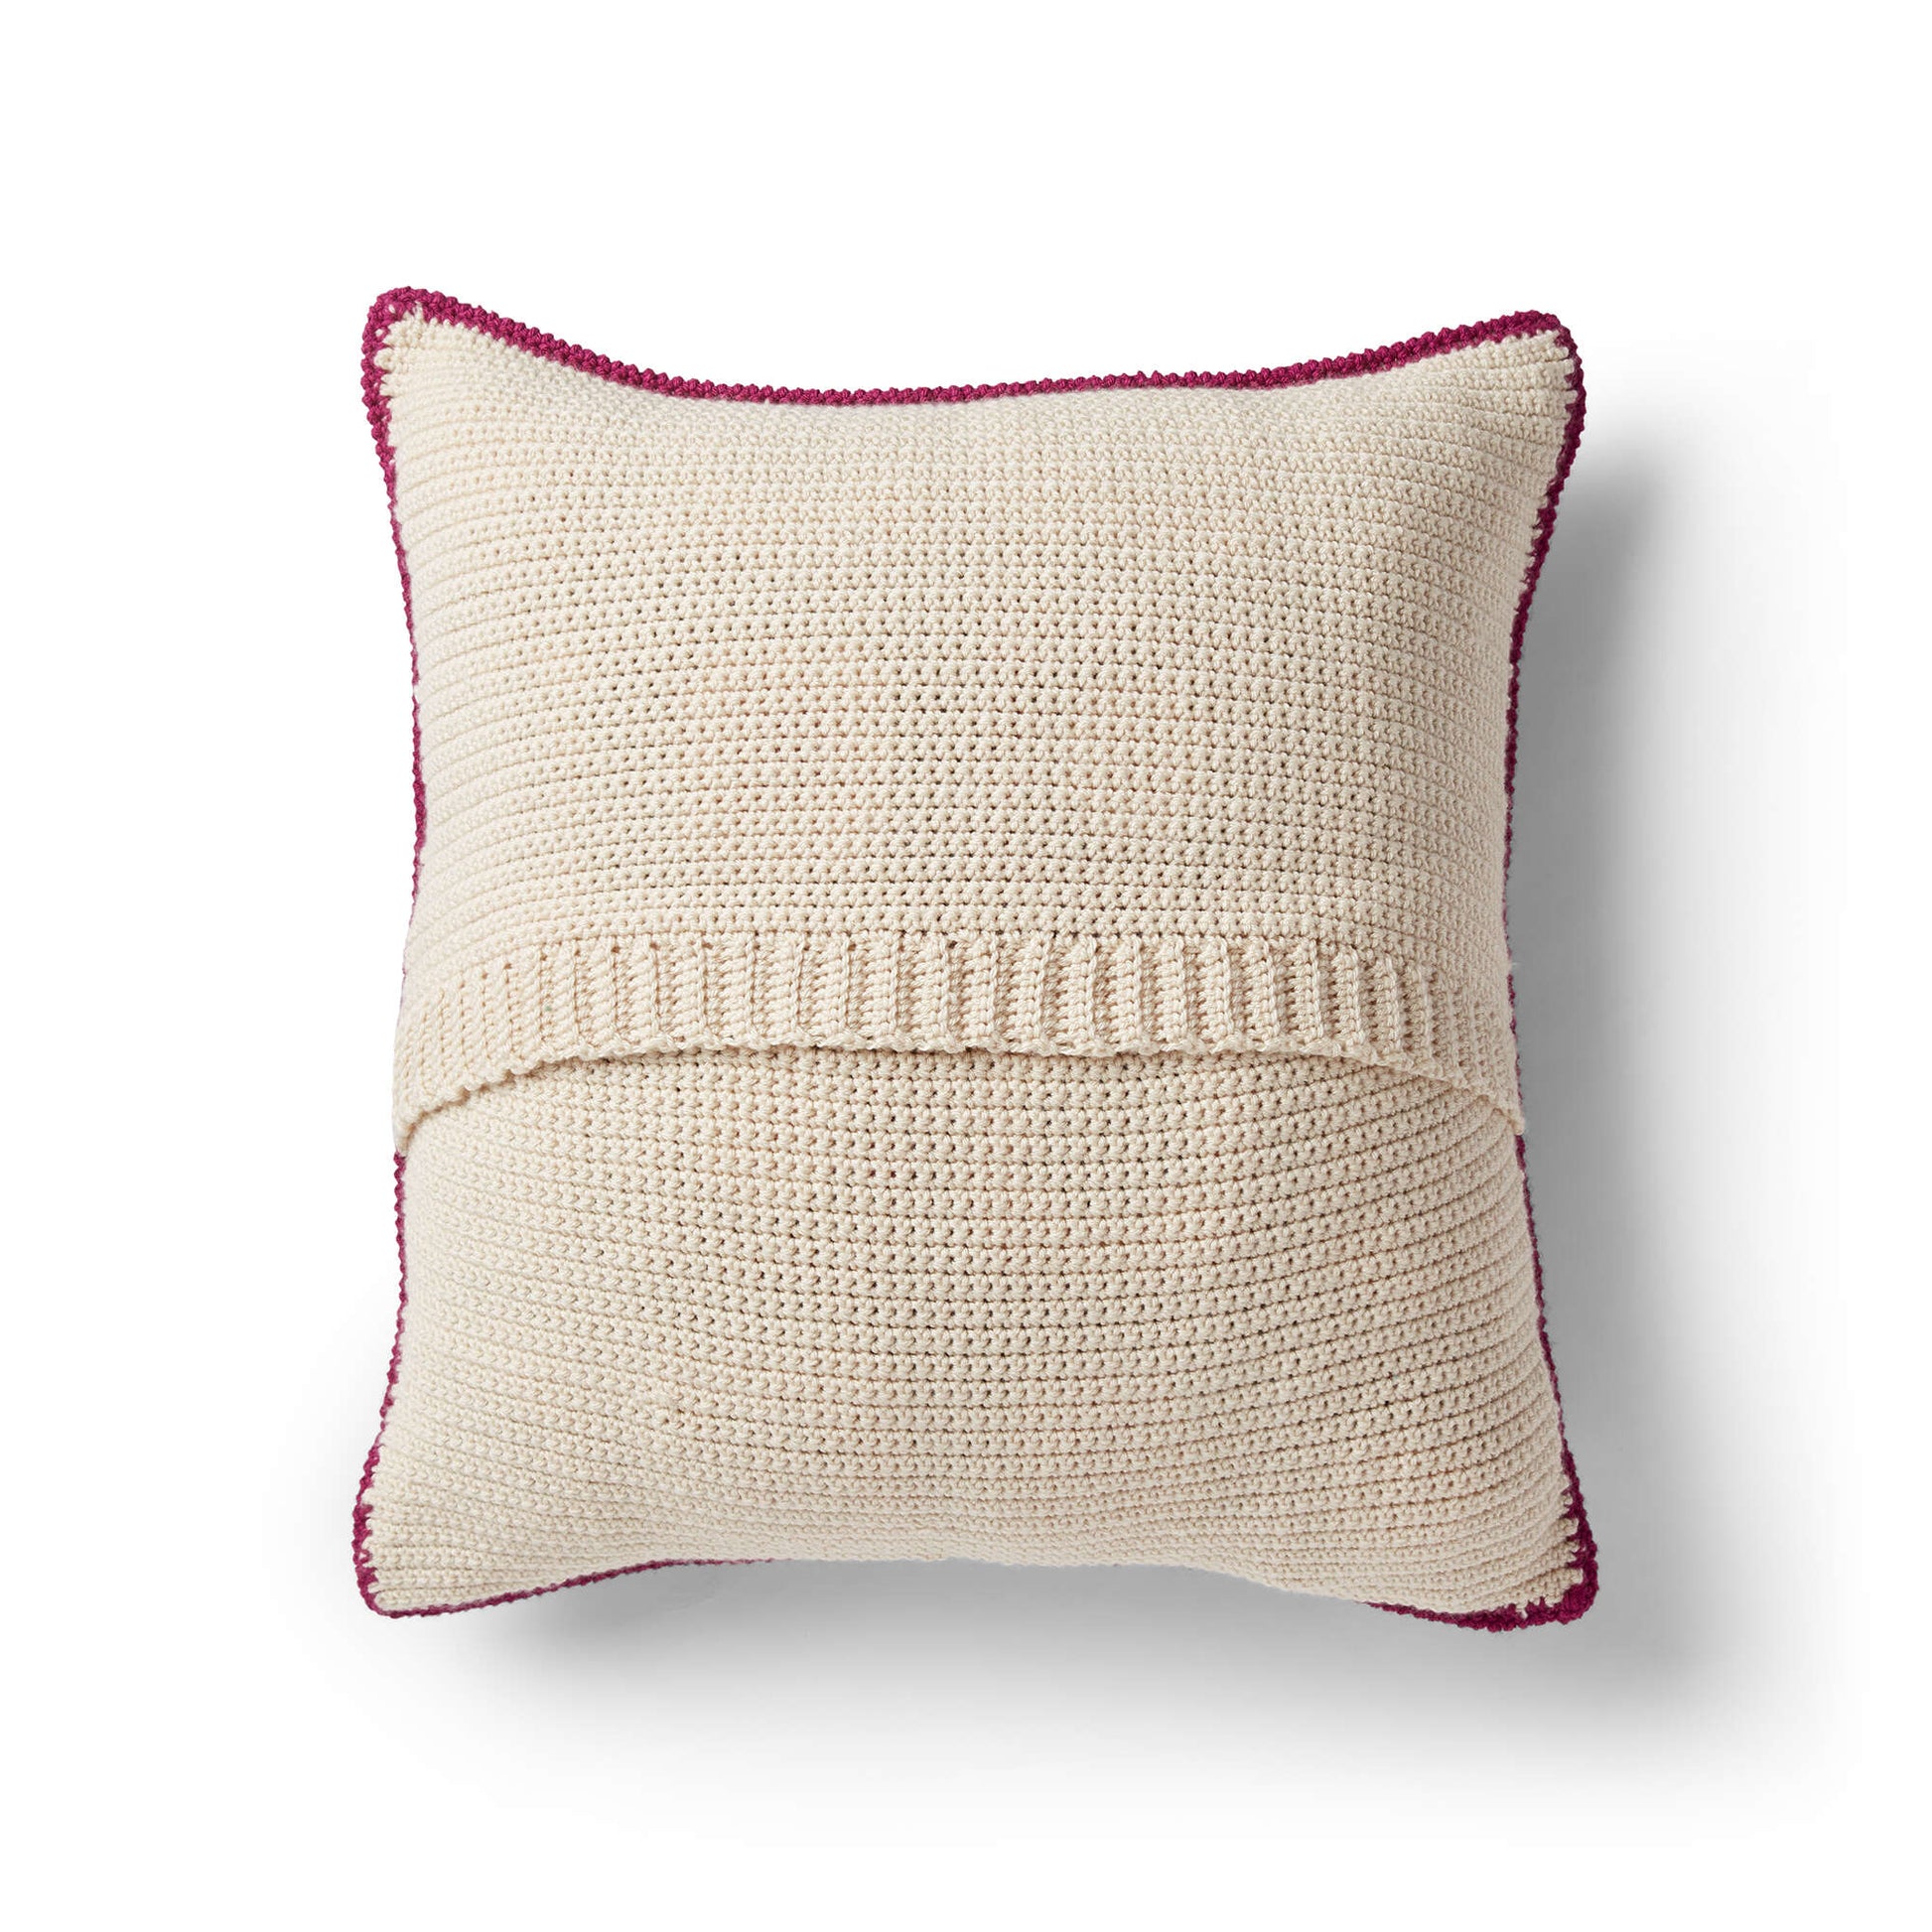 Free Patons Geo-Pop Crochet Pillow Pattern